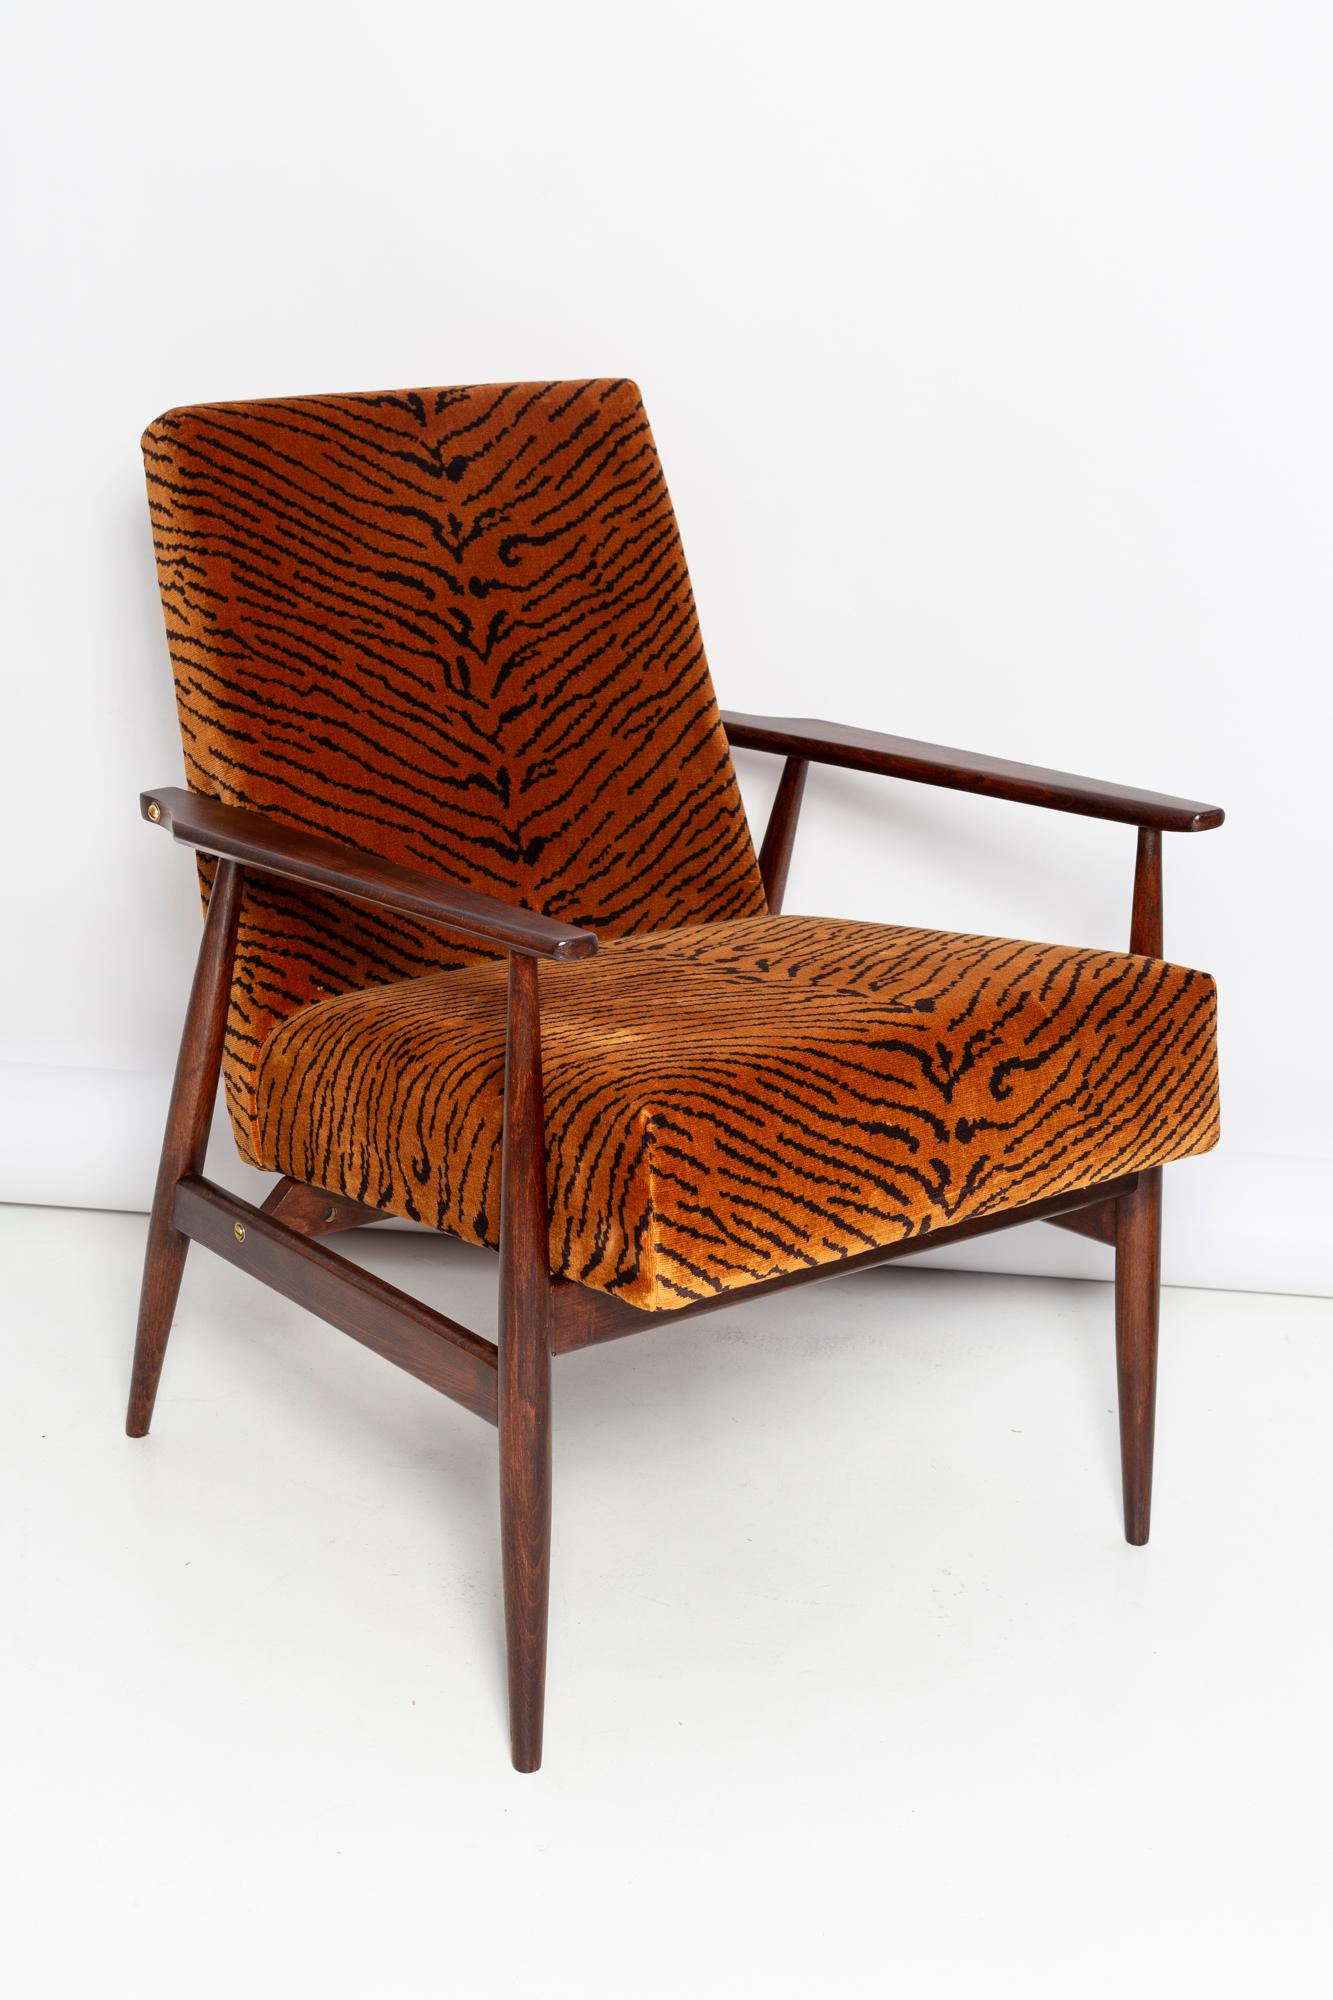 Un magnifique fauteuil restauré, conçu par Henryk Lis. Original des années 1960 produit en Europe, en Pologne. Meubles après rénovation complète de la menuiserie et de la tapisserie d'ameublement. Le tissu, qui recouvre un dossier et une assise, est